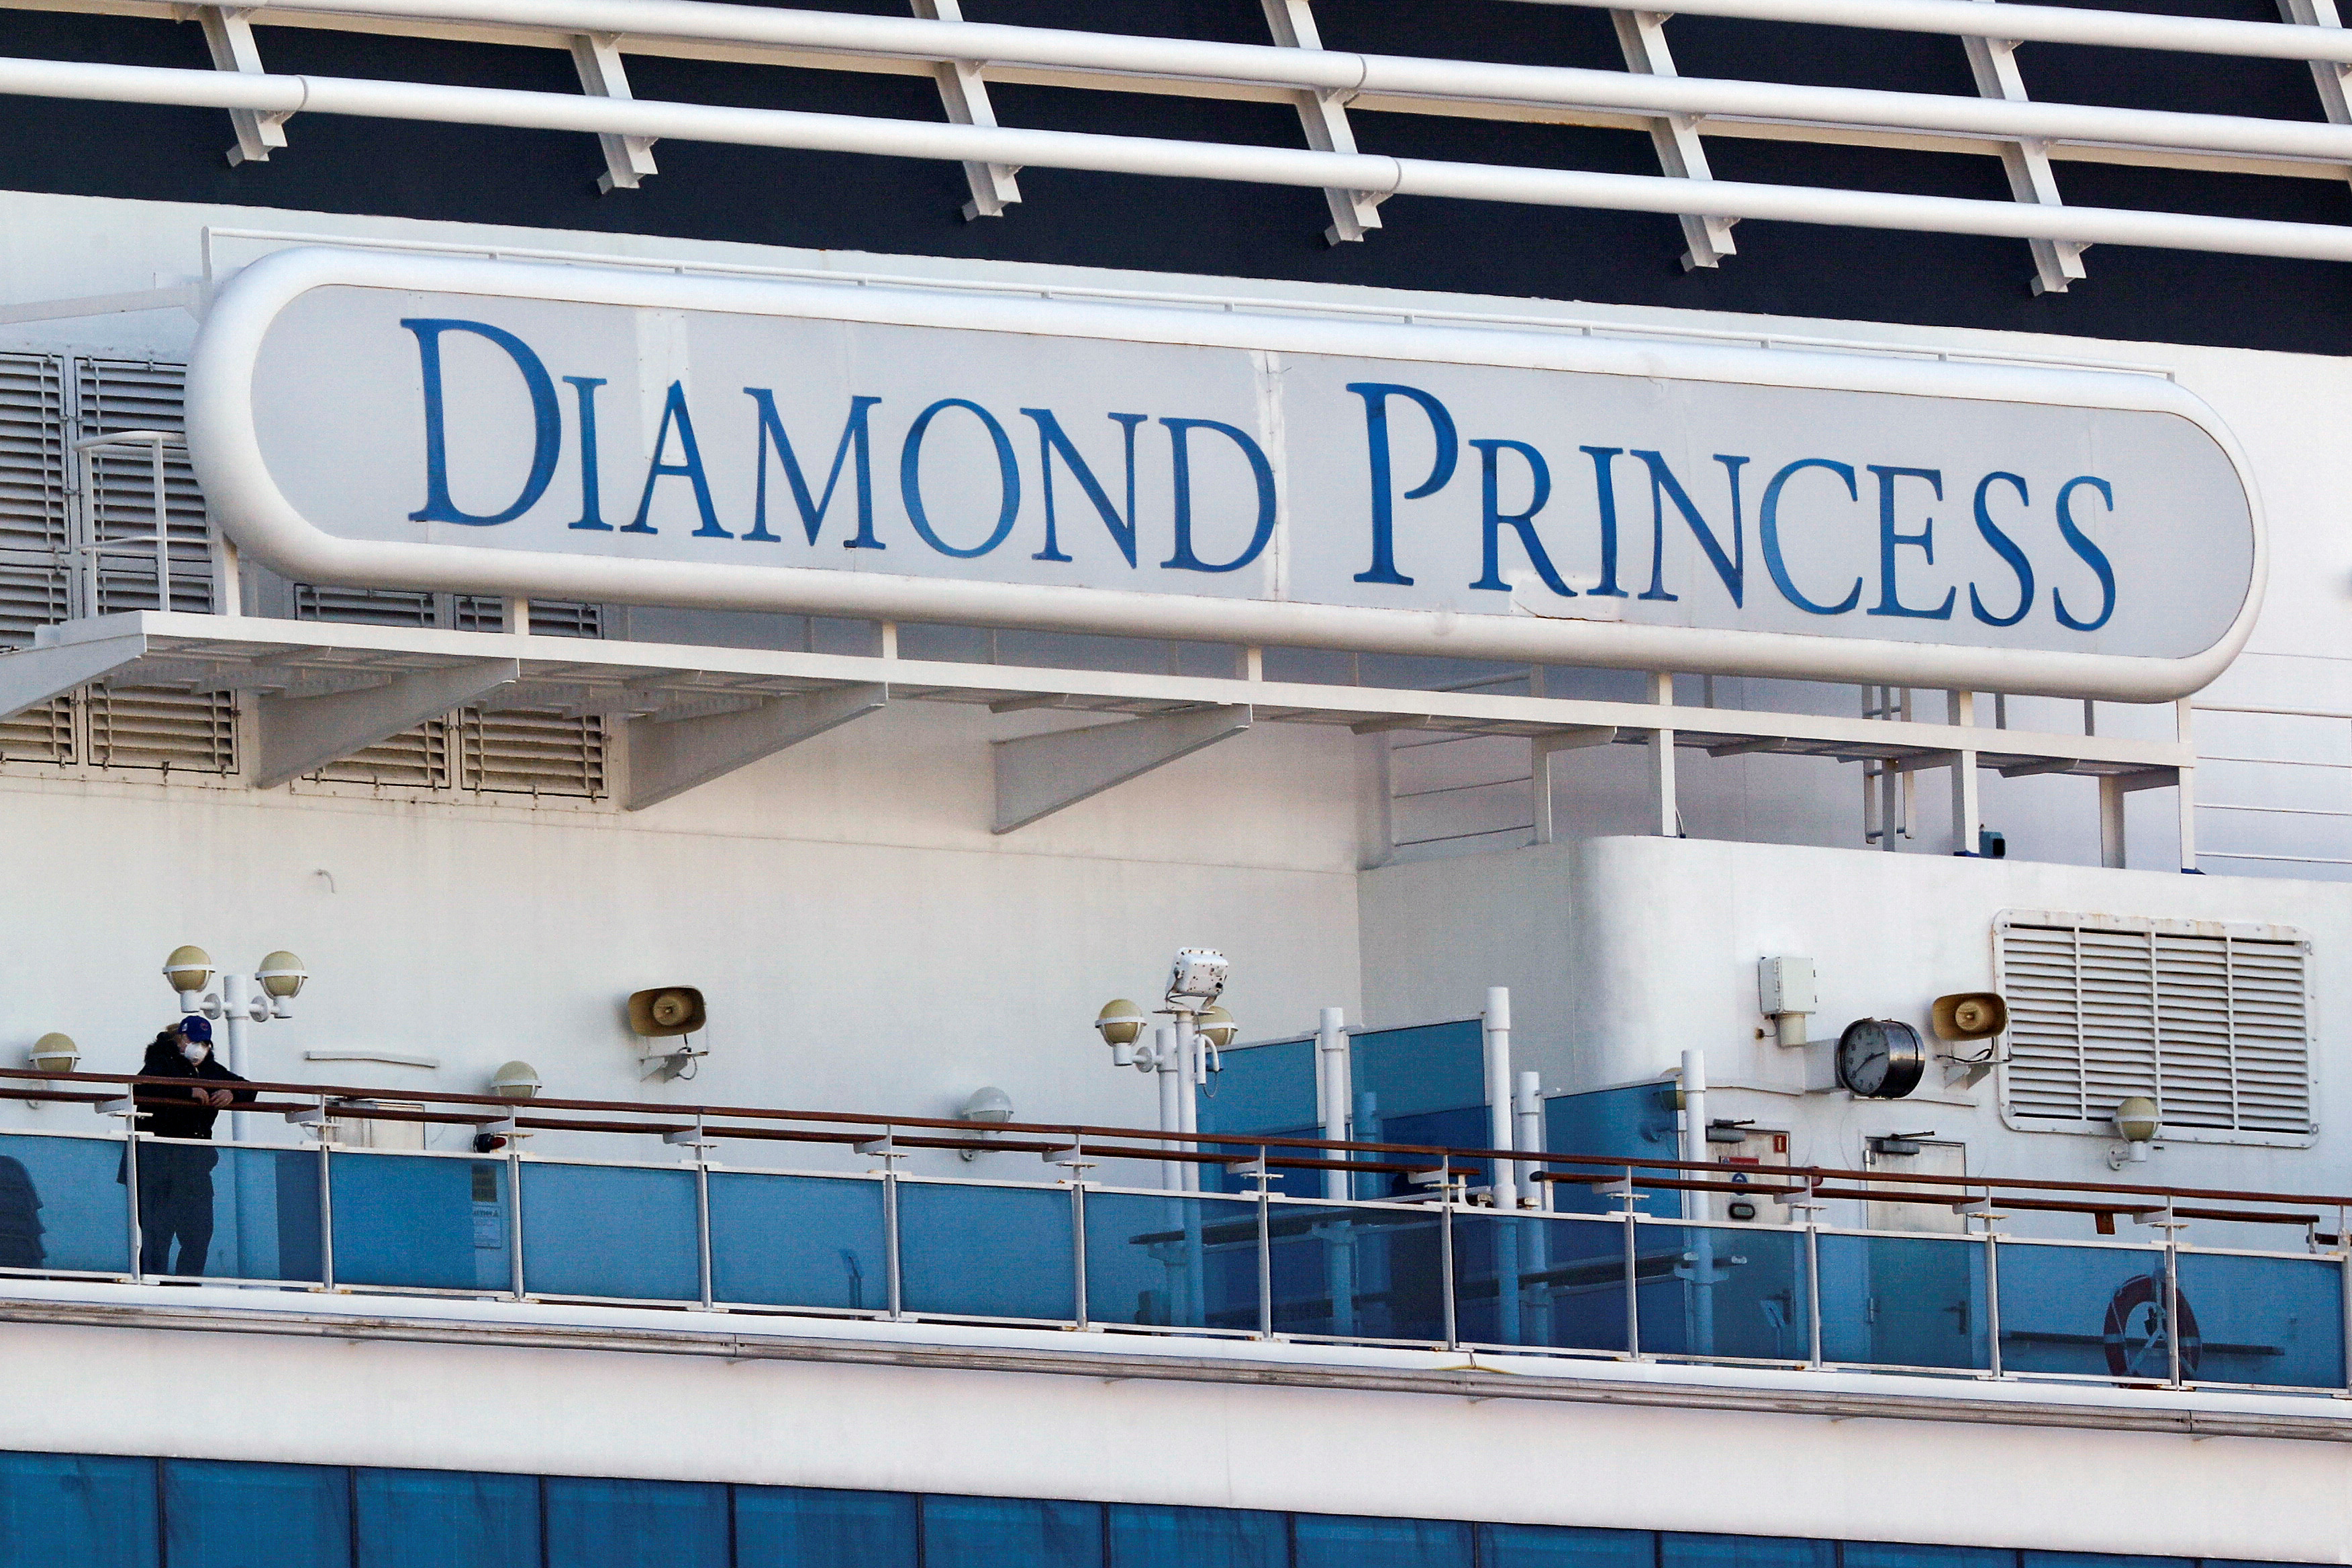 Salen del crucero Diamond Princess pasajeros que estaban en cuarentena